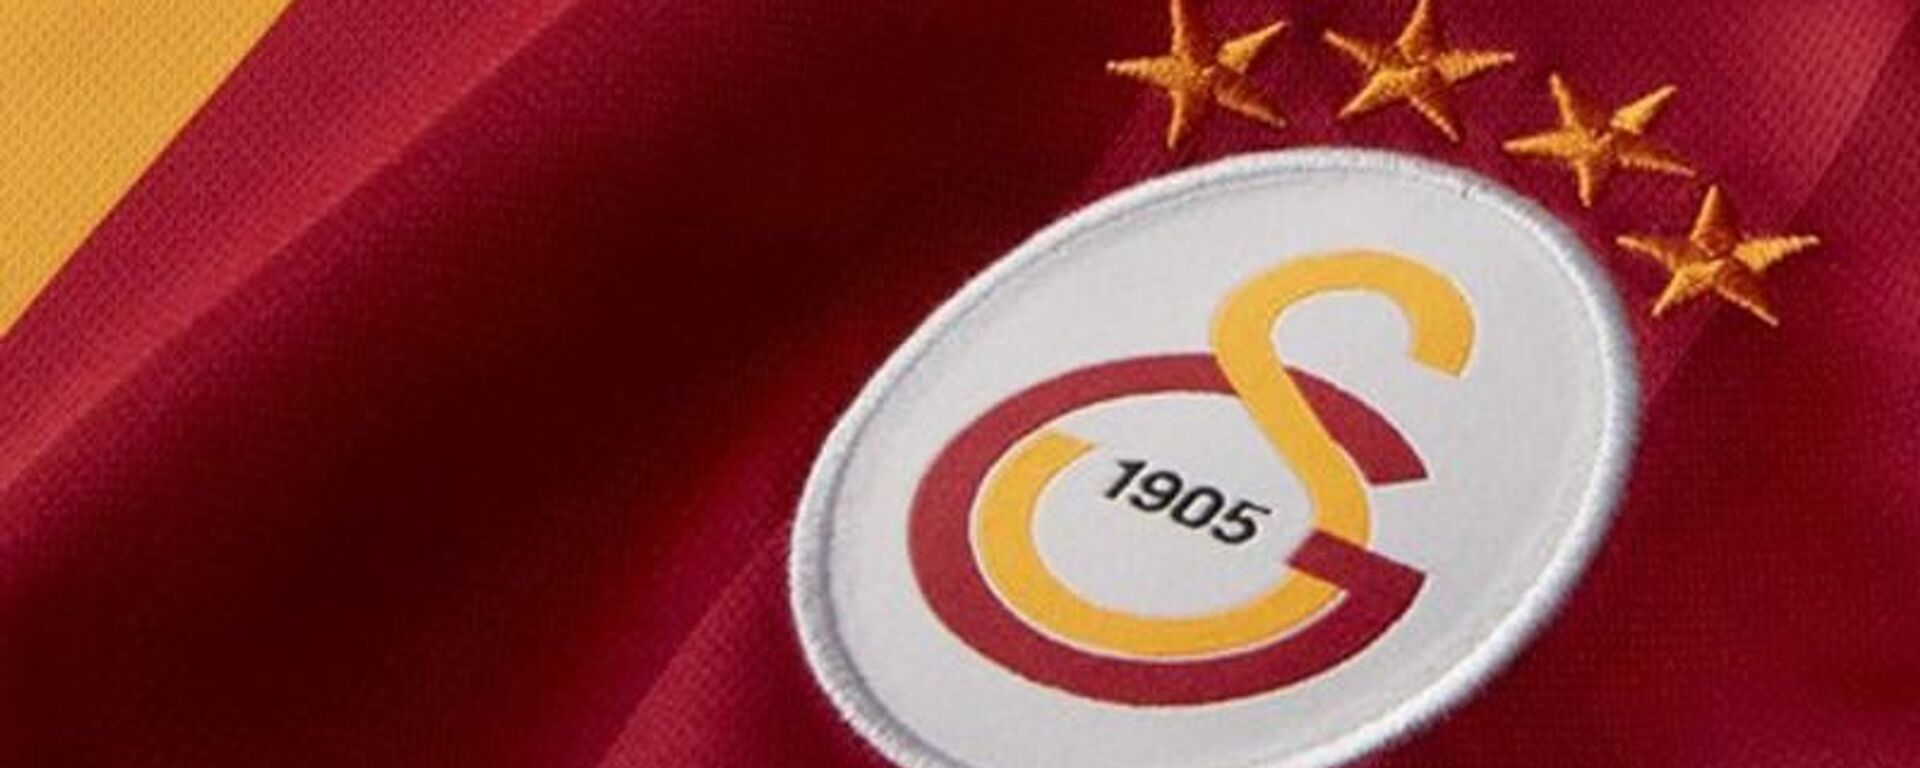 Galatasaray’da yeni yönetimin sosyal medya kararı - Sputnik Türkiye, 1920, 24.08.2021